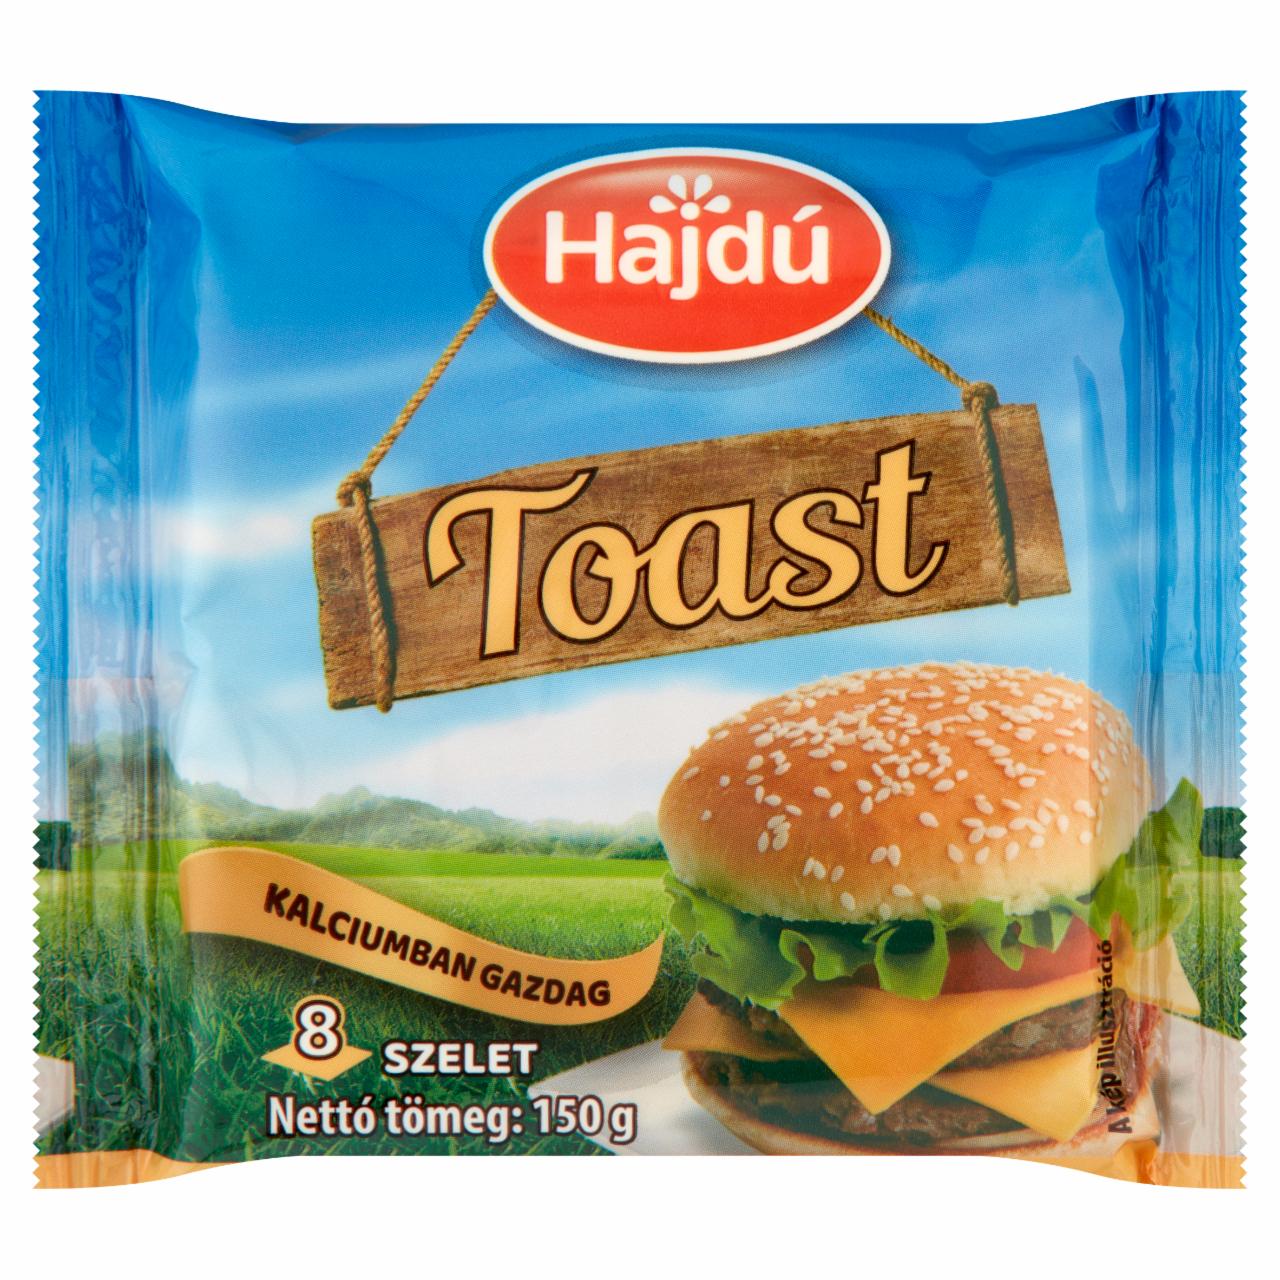 Képek - Hajdú Toast félzsíros ömlesztett sajt 8 db 150 g